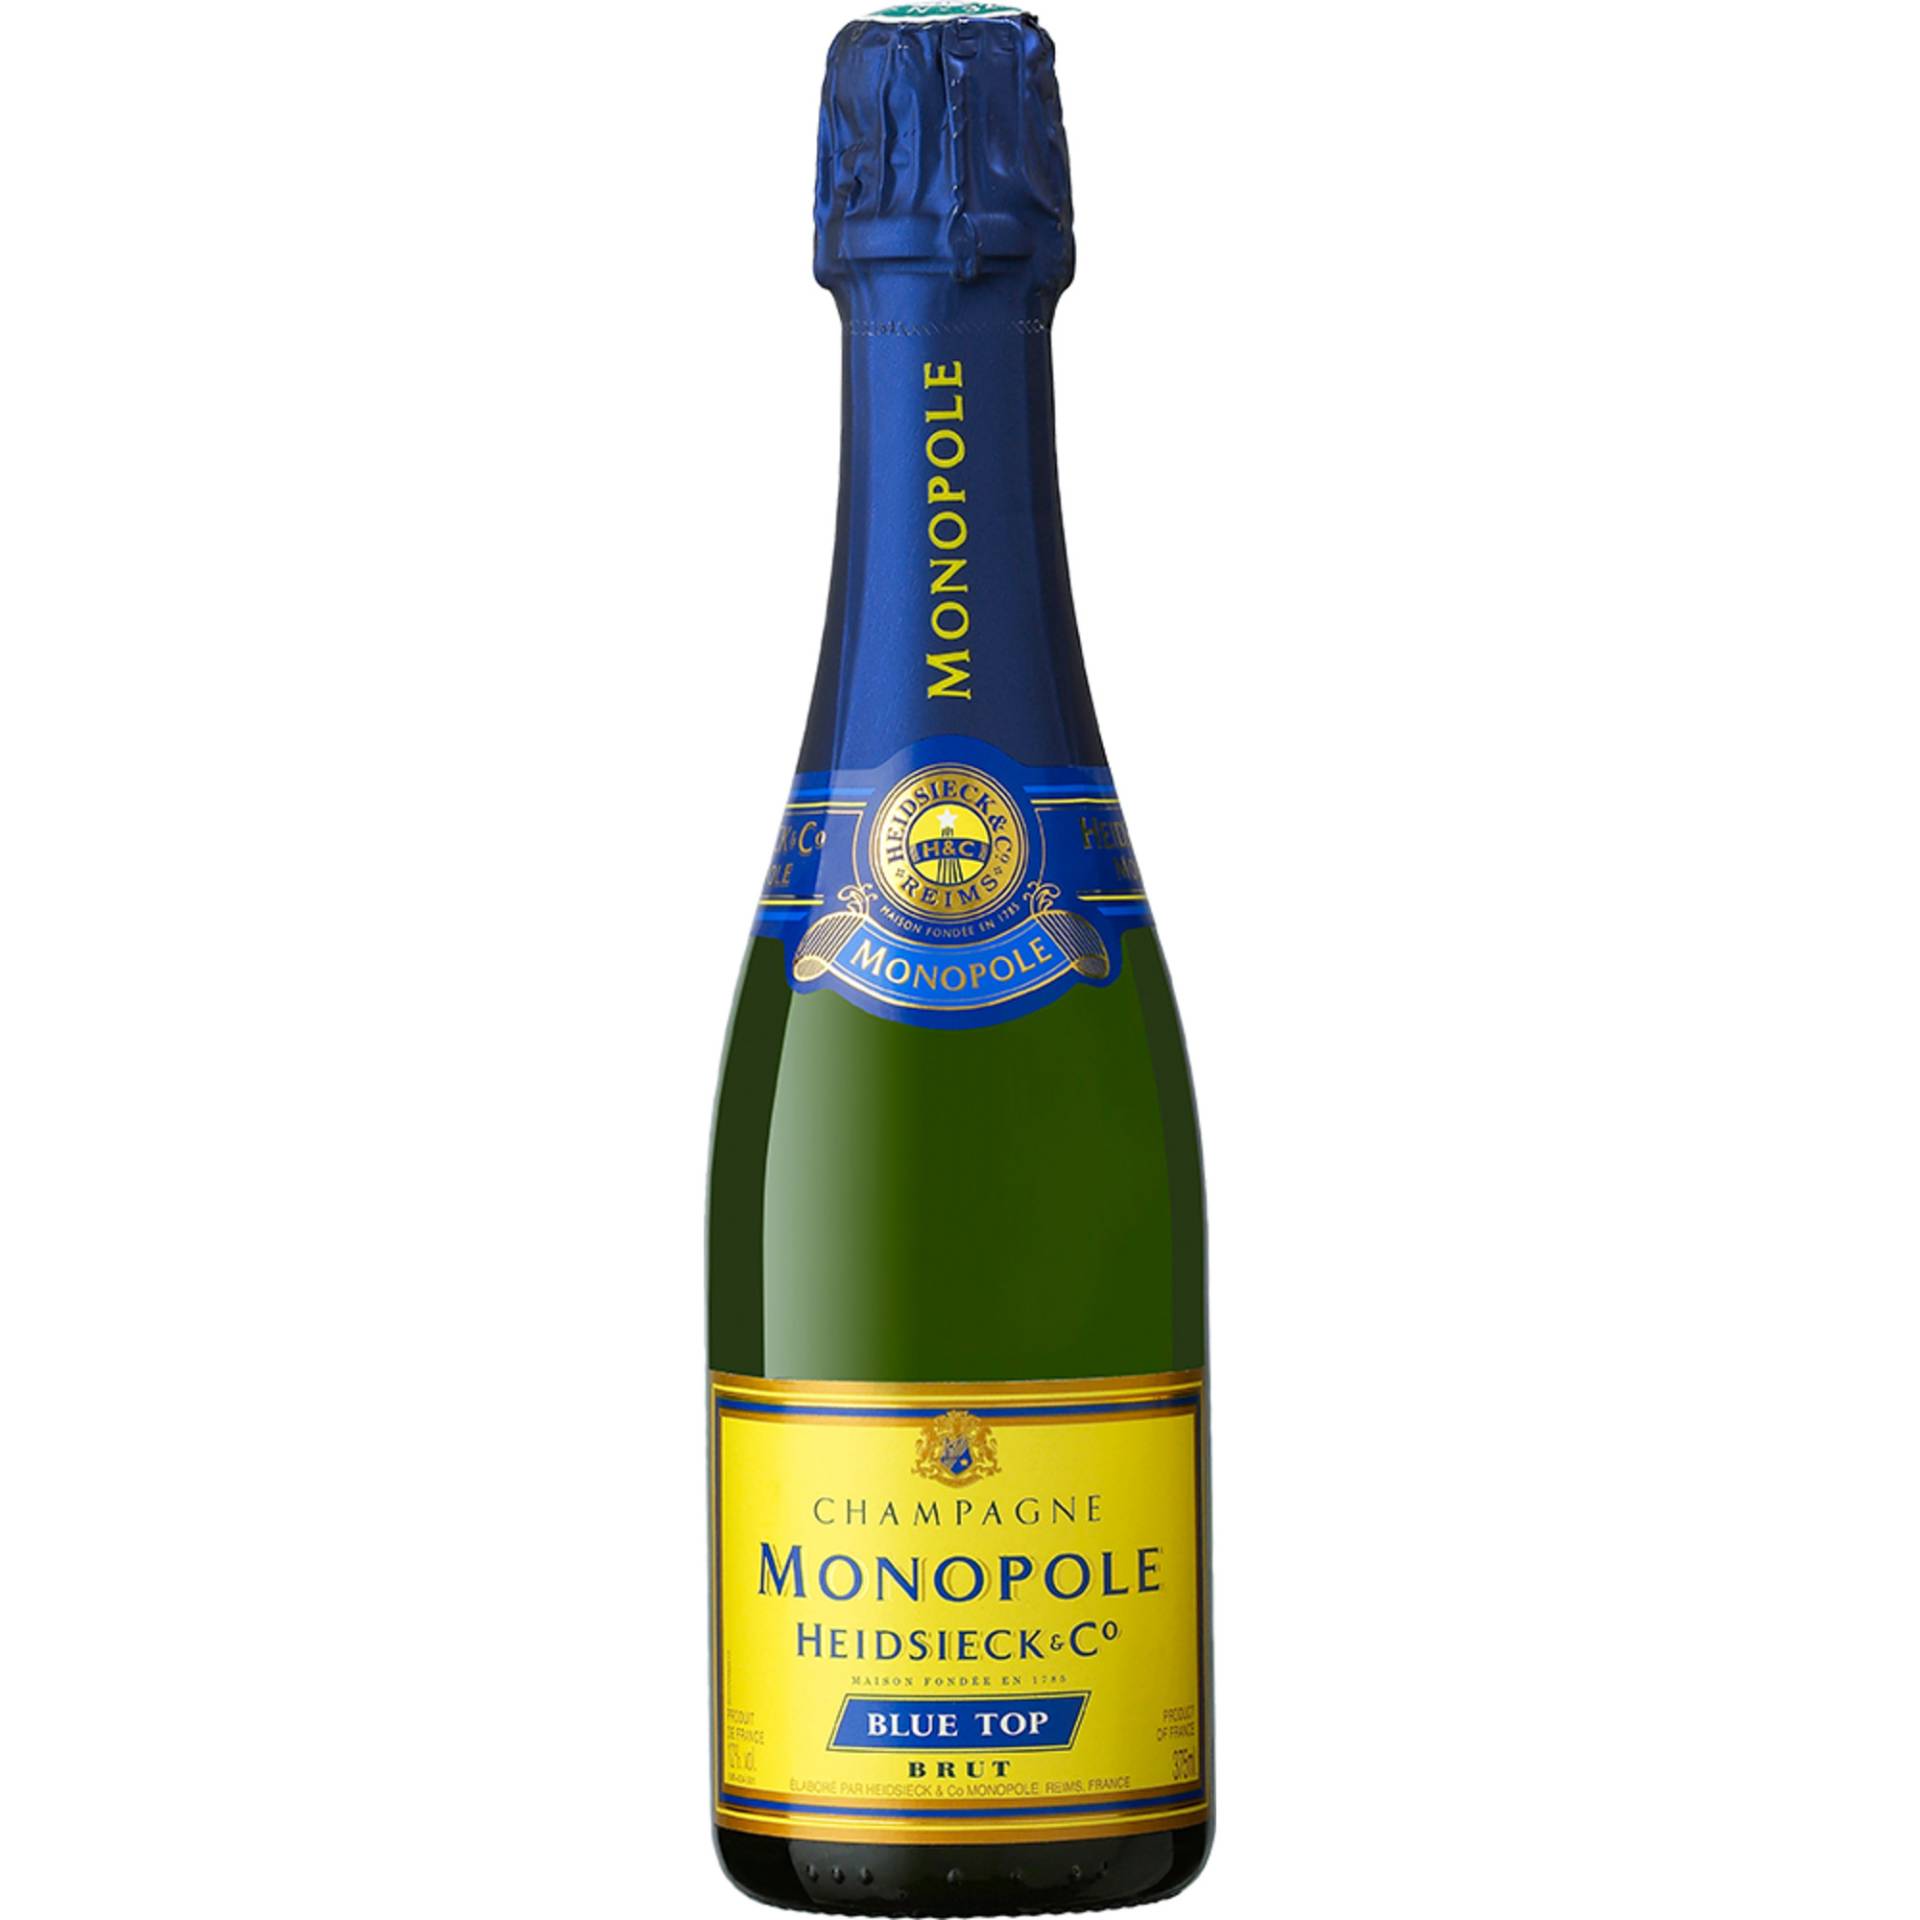 Champagne Heidsieck Monopole Blue Top, Brut, Champagne AC, 0,375L, Champagne, Schaumwein von Heidsieck Monopole & Co., 51100 Reims, France